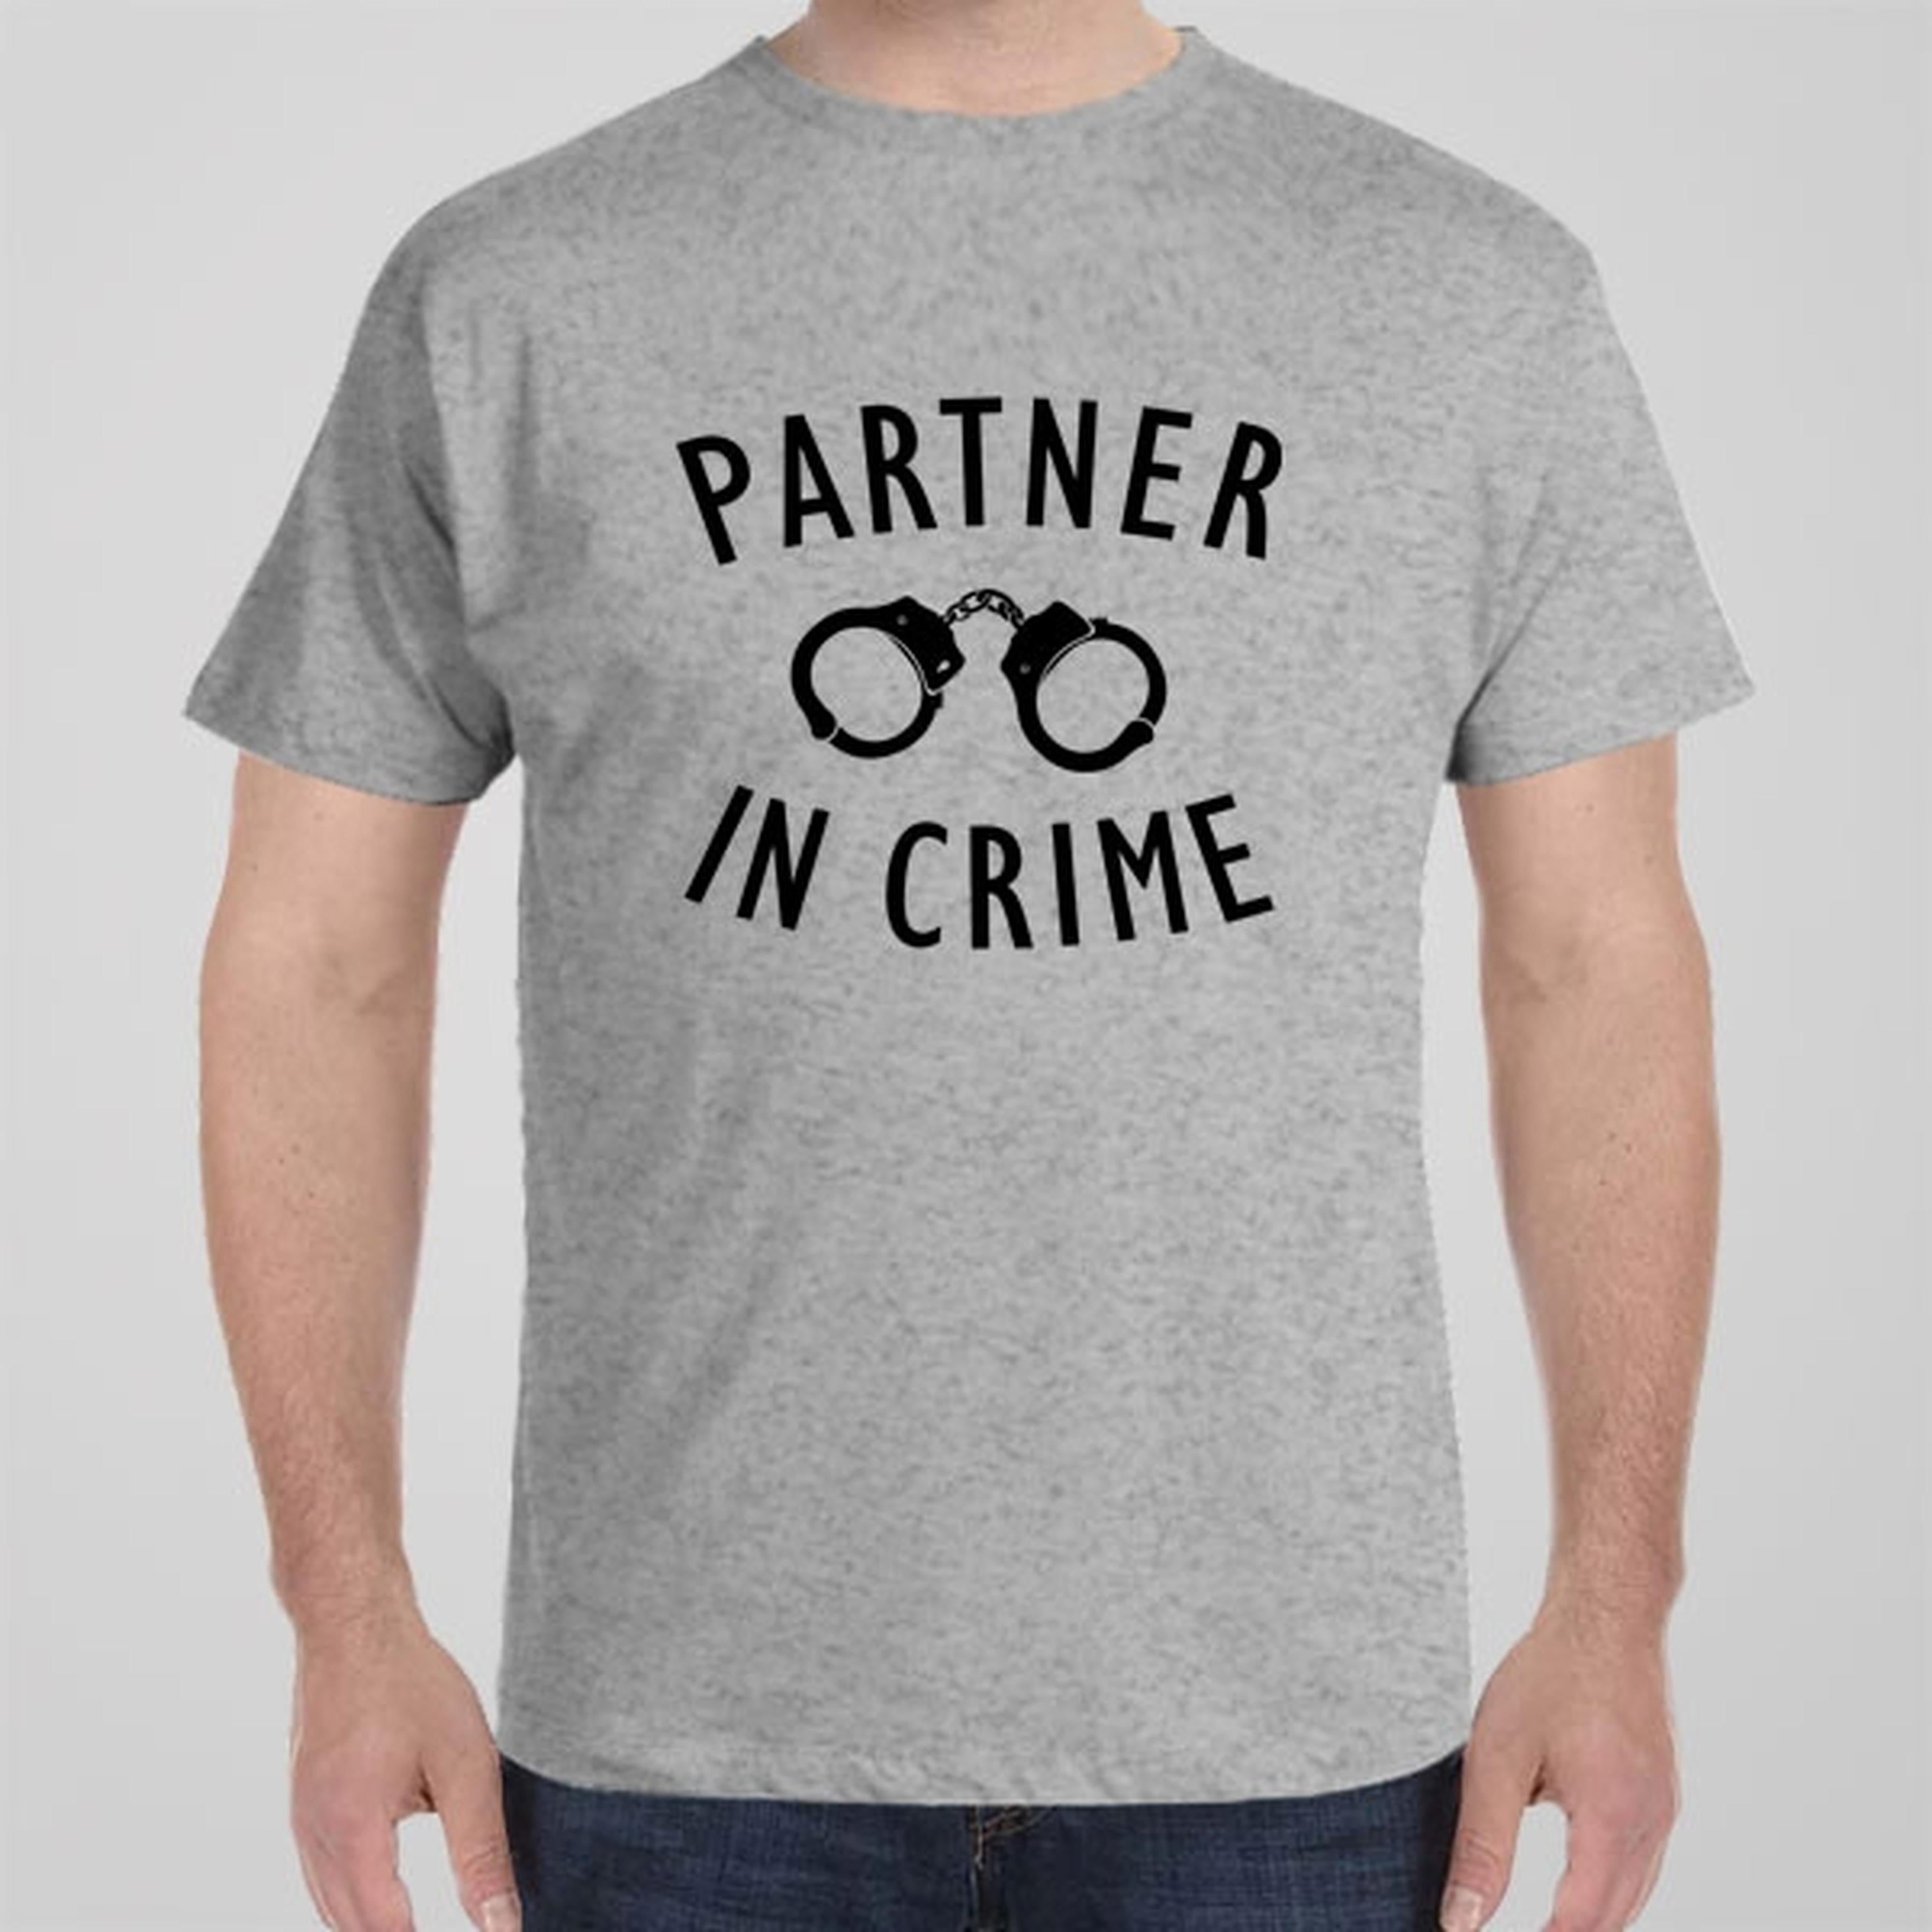 partner-in-crime-t-shirt